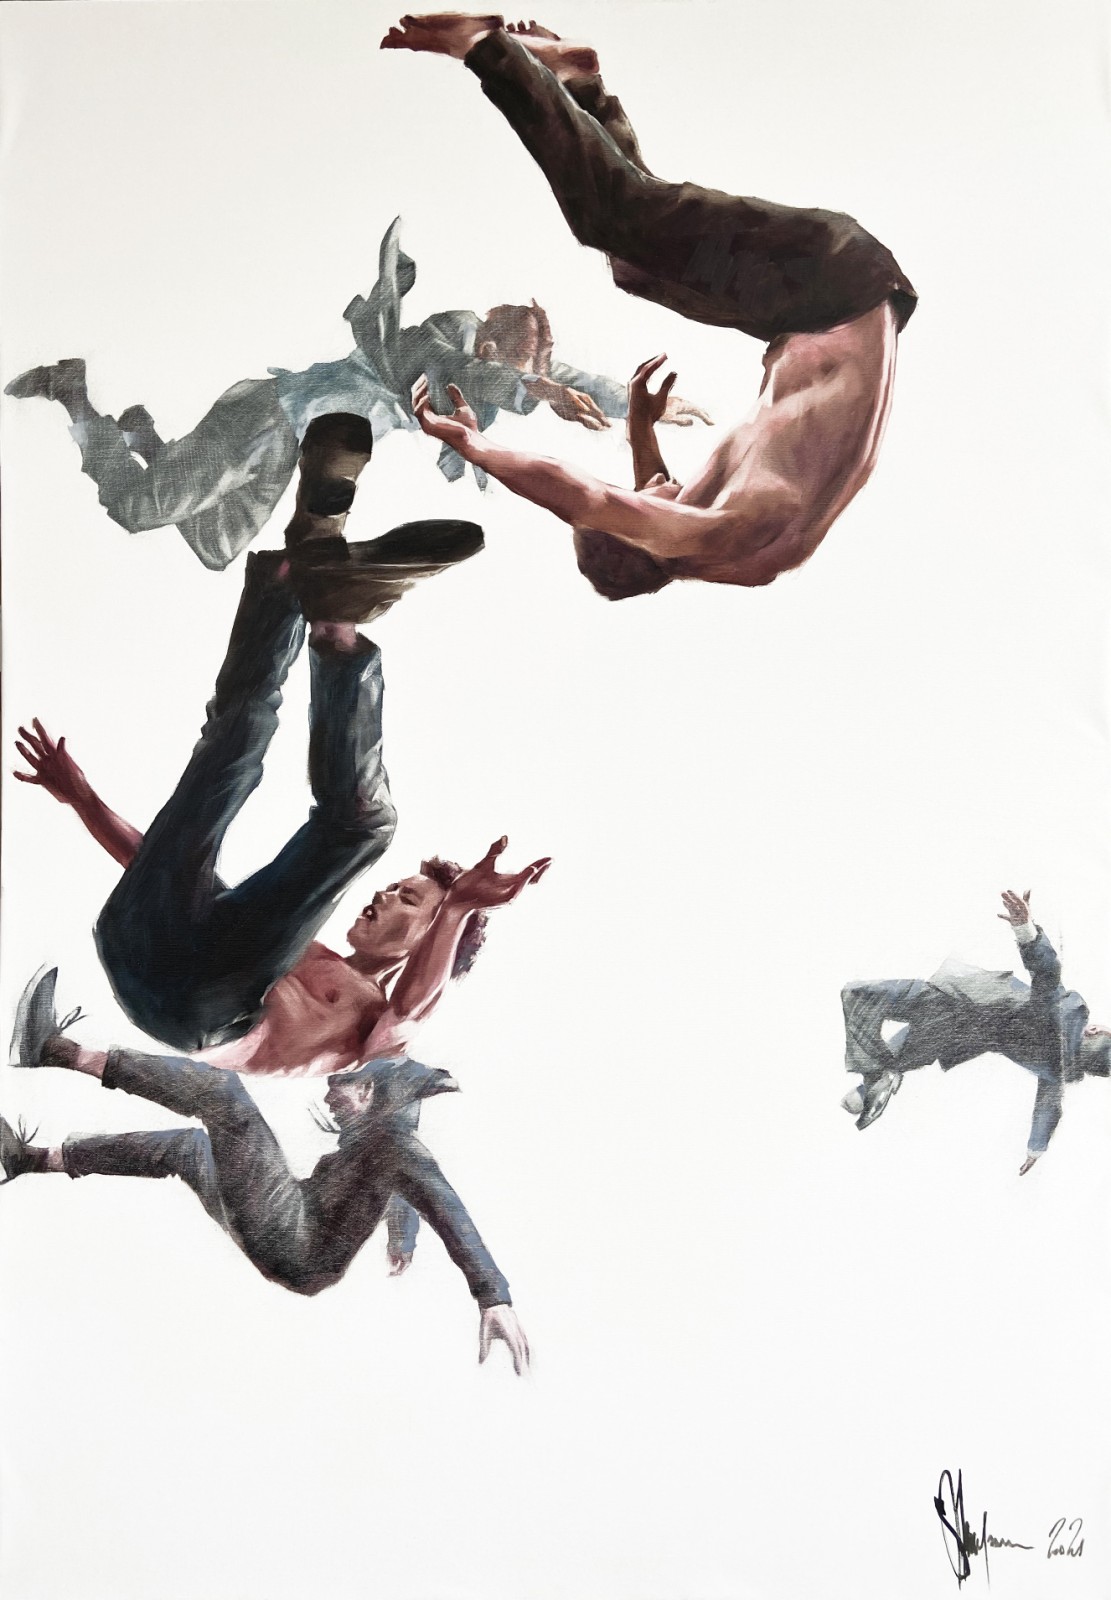 Igor Shulman's Artistic Collection: "Gravity"